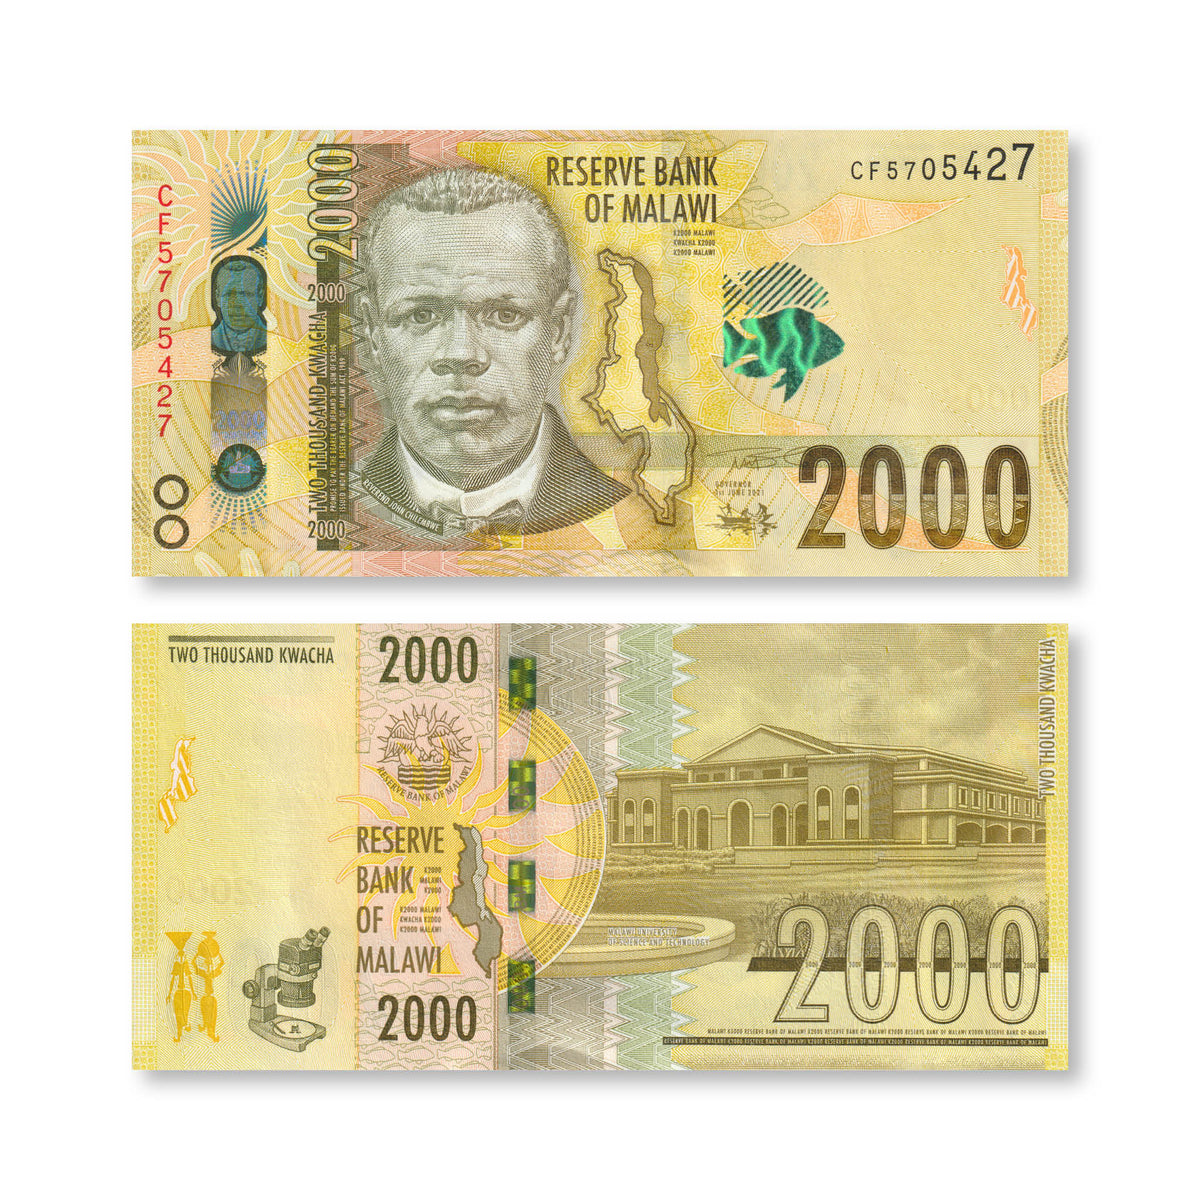 Malawi 2000 Kwacha, 2021, B163e, P69, UNC - Robert's World Money - World Banknotes